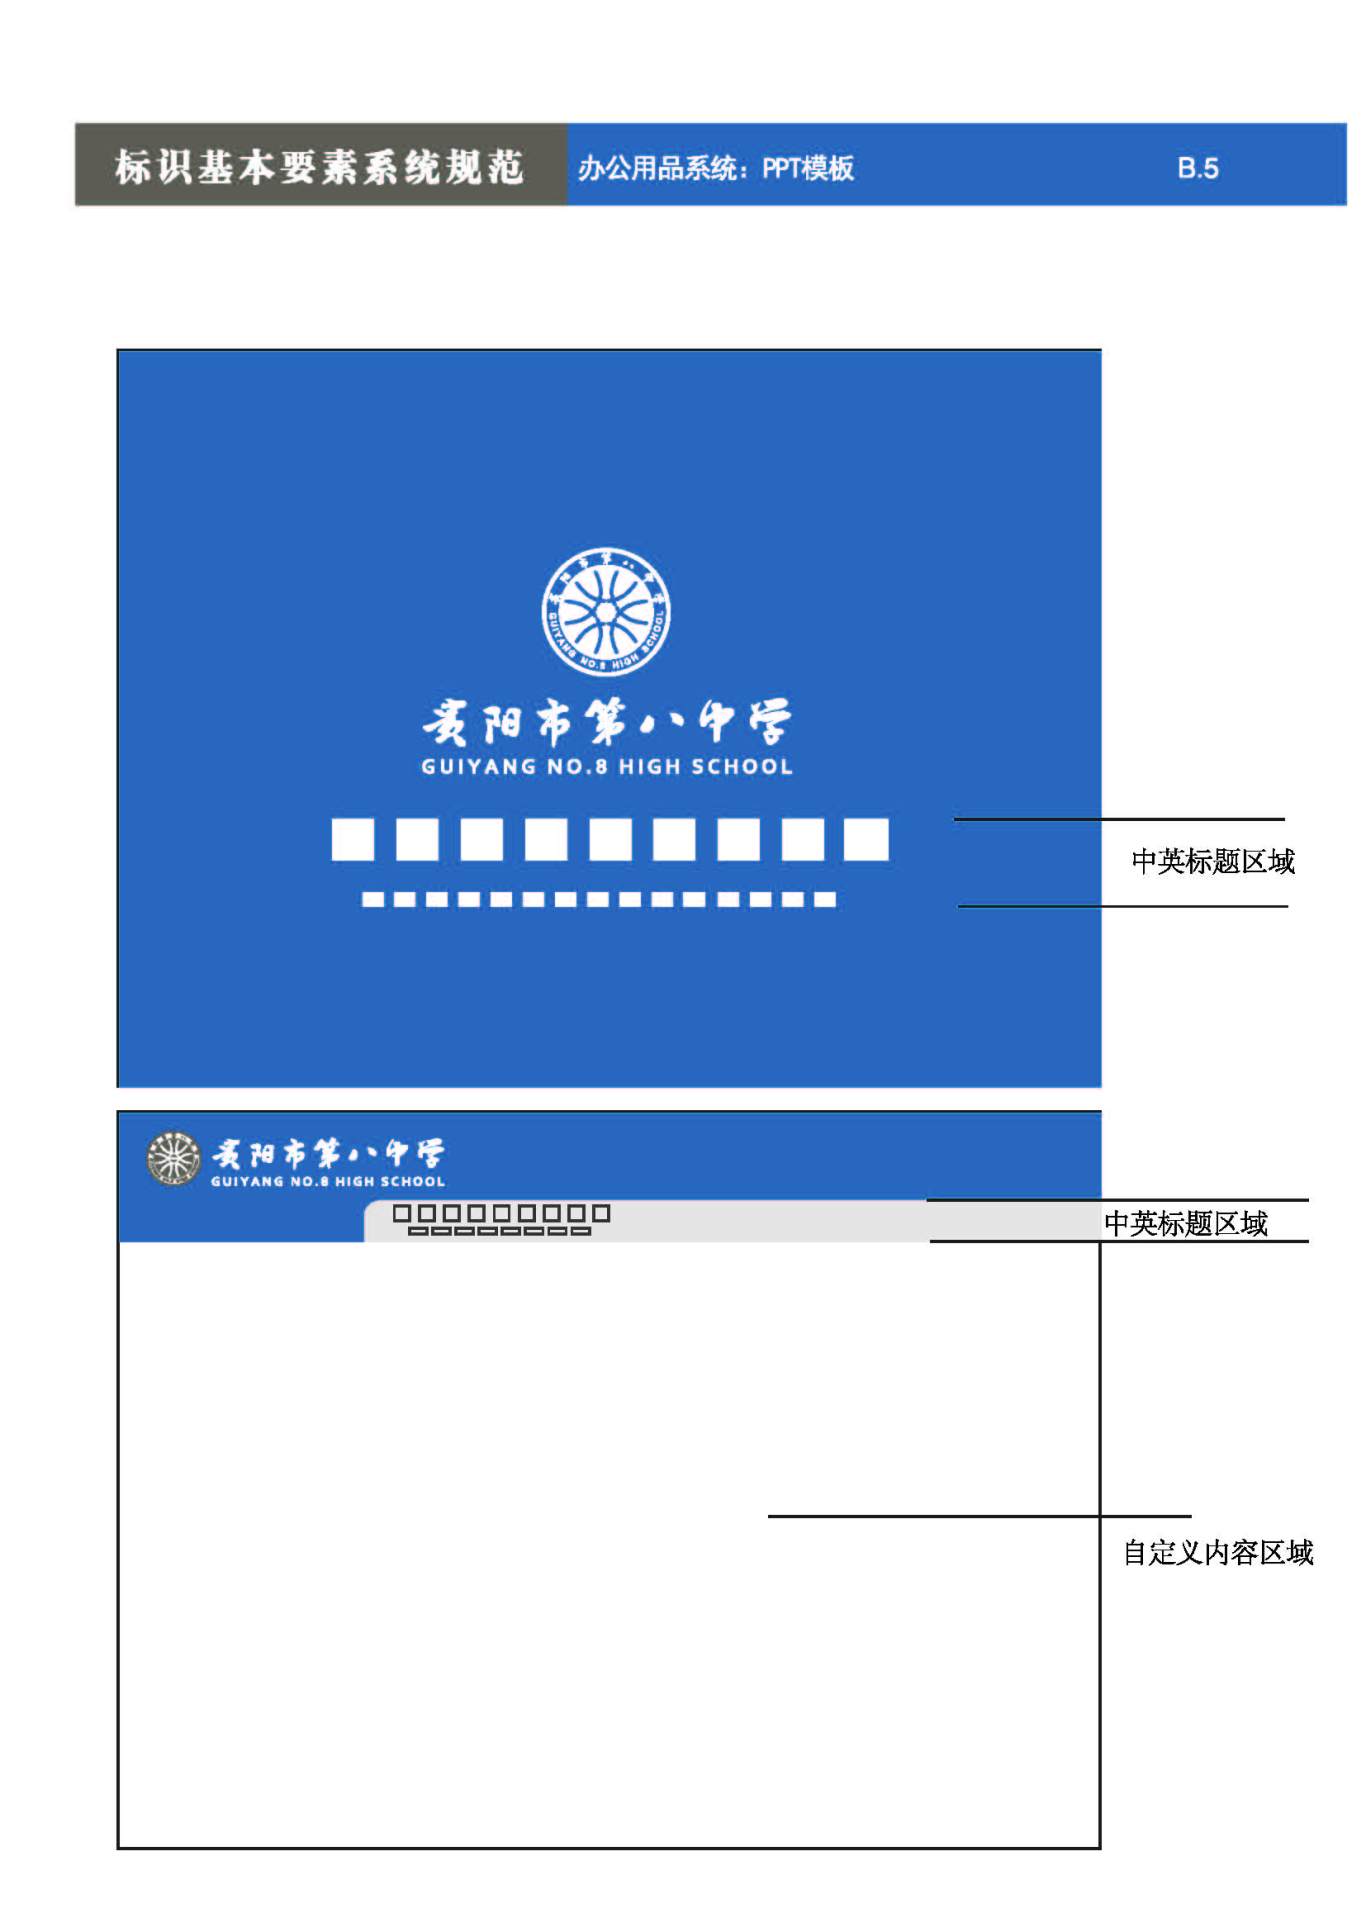 貴陽第八中學Logo、VIS設計圖53